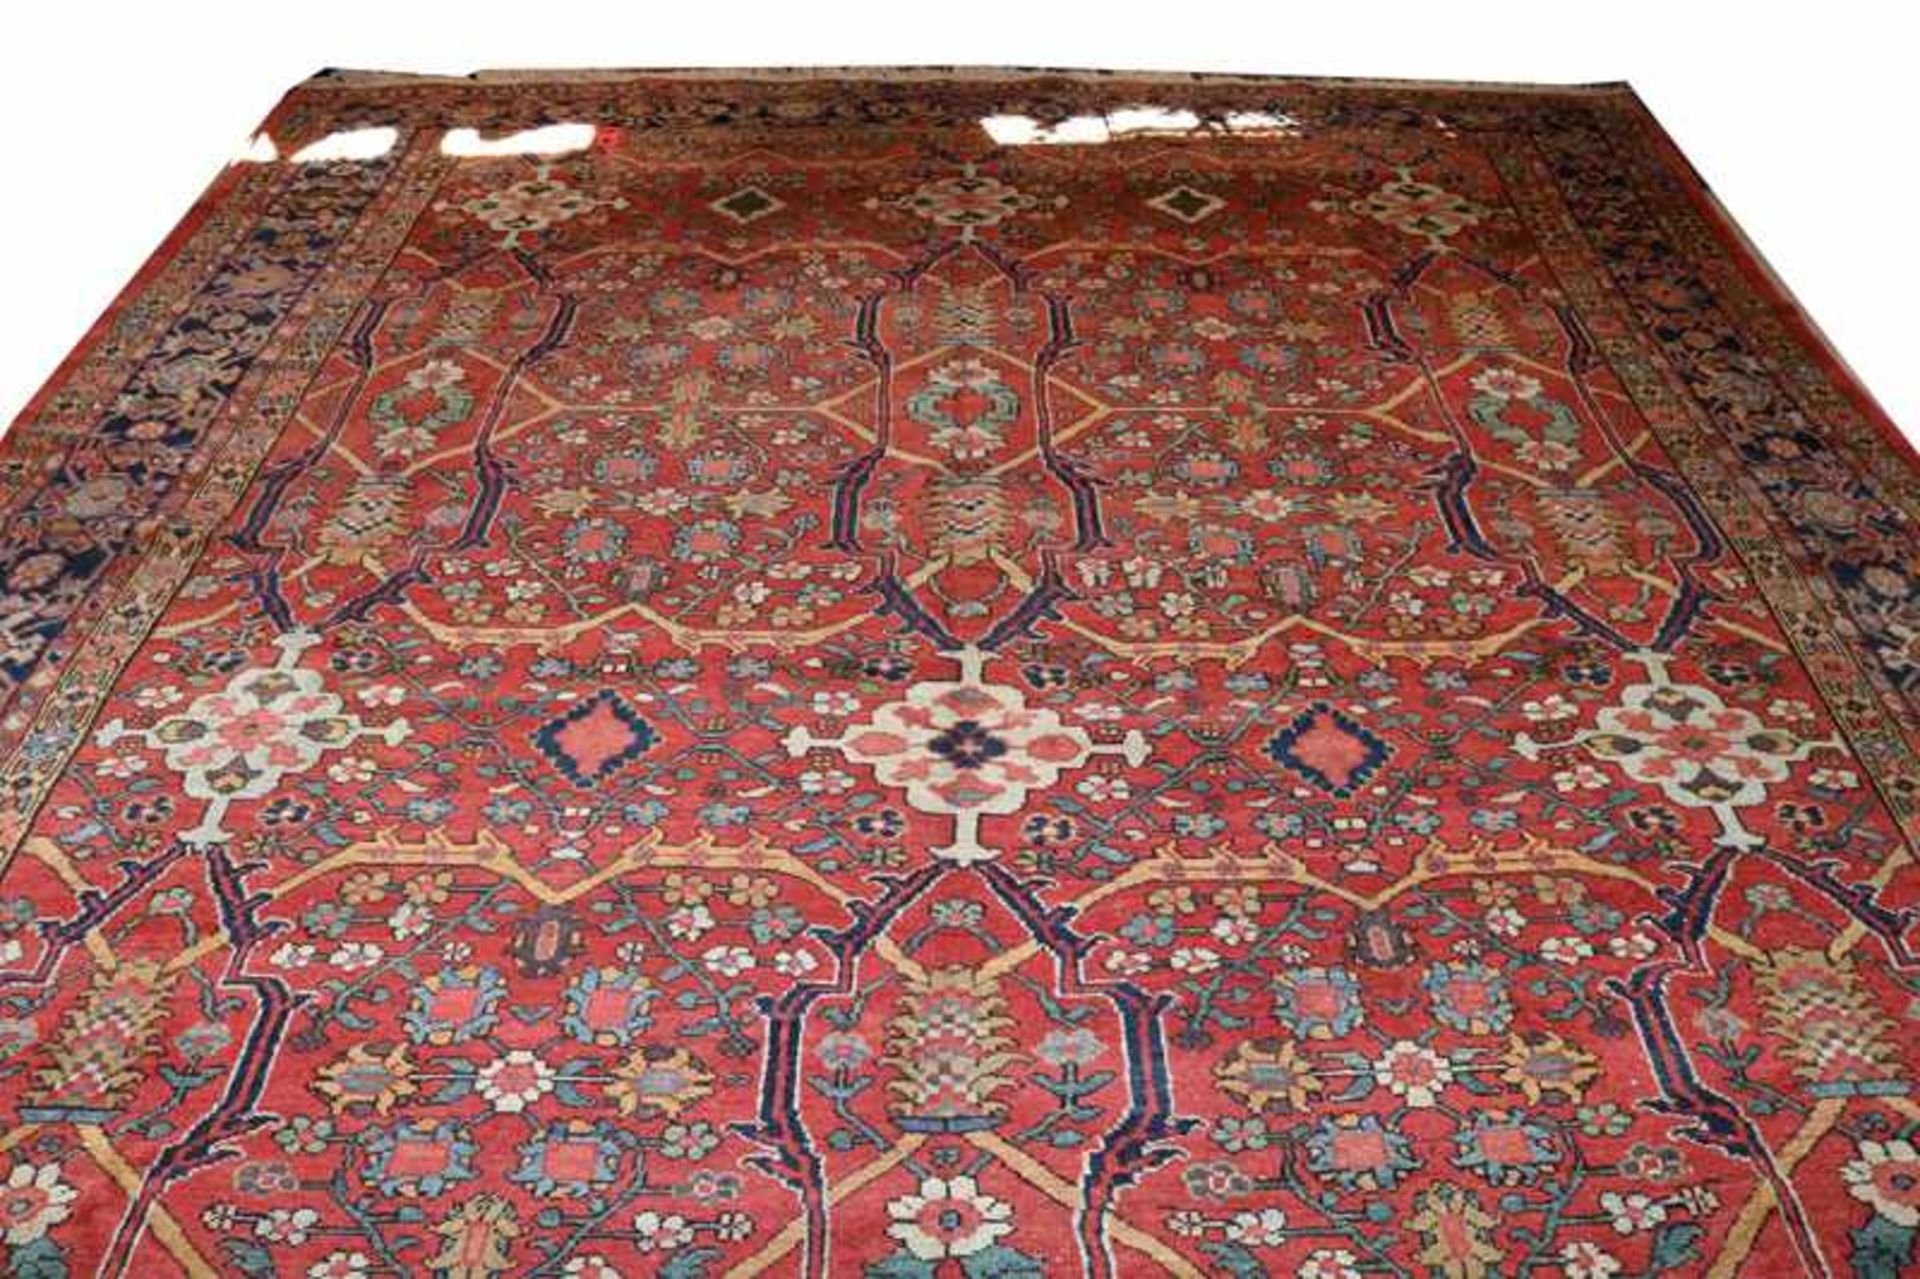 Teppich, Sultanabad, Iran, 2. Hälfte 20. Jahrhundert, etwa 90.000 Knoten pro Quadratmeter,